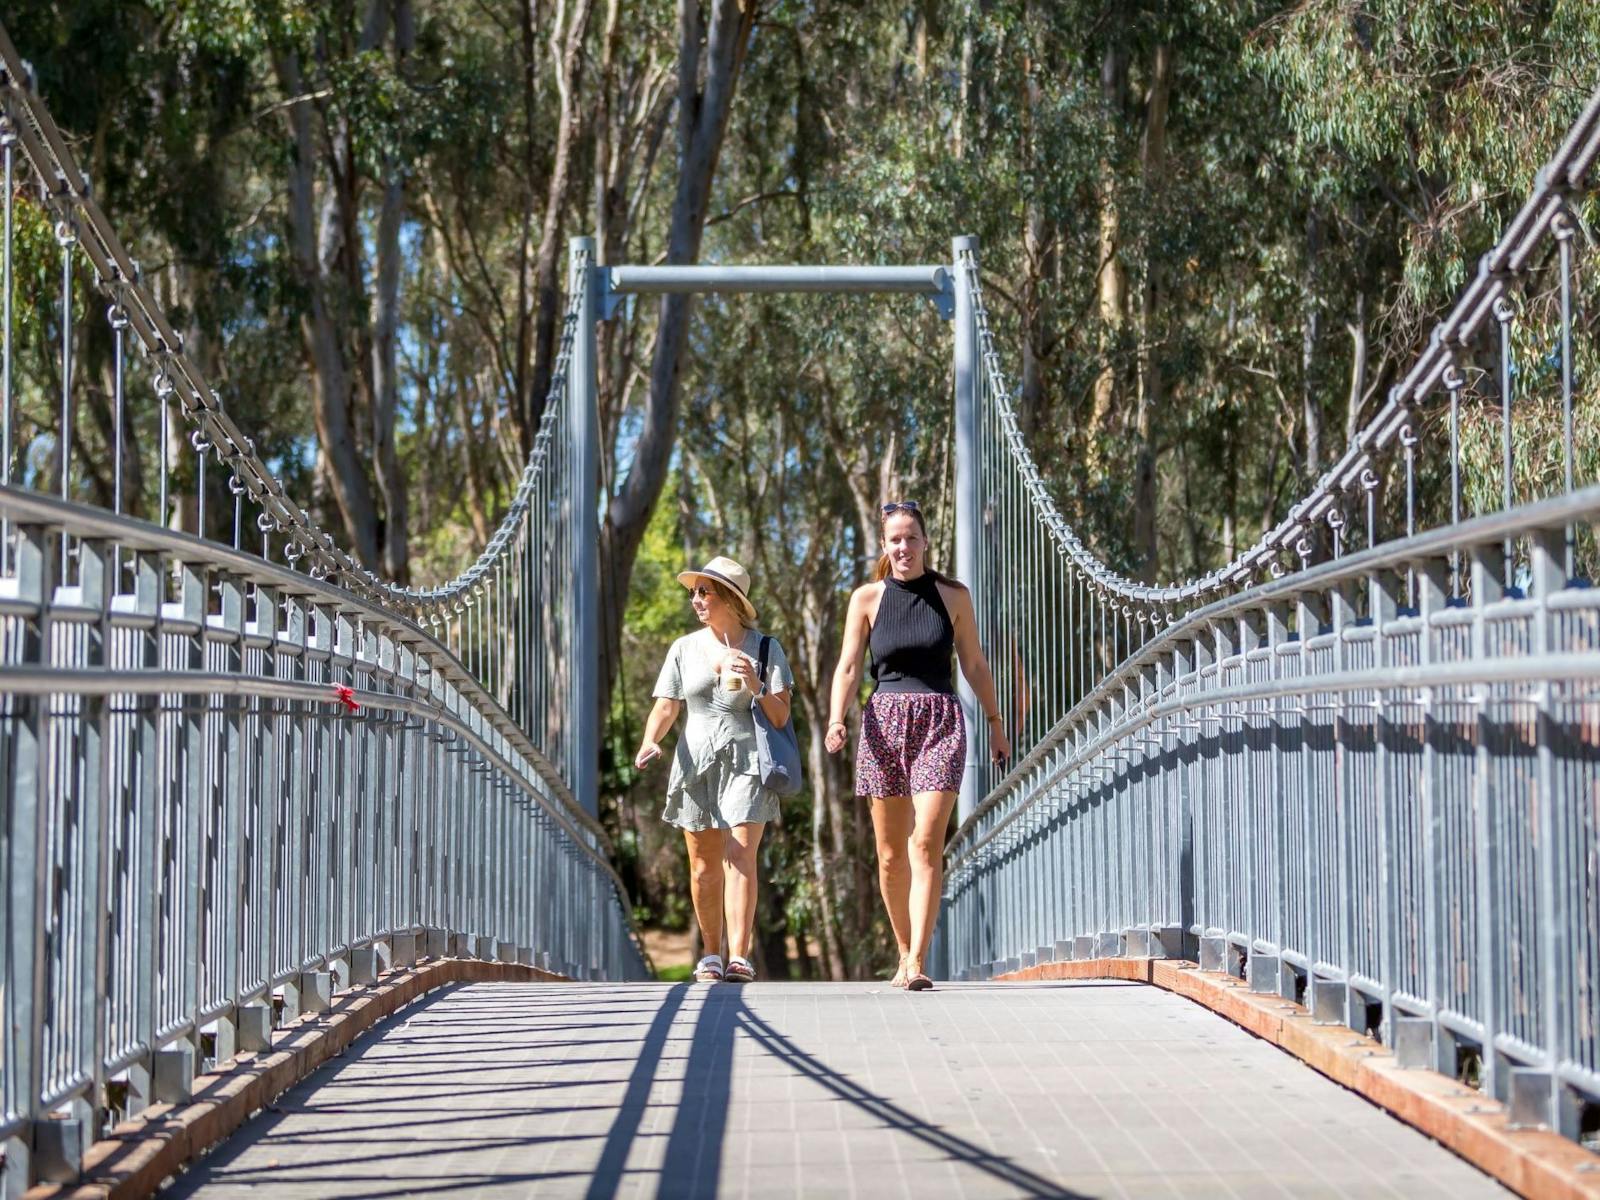 Two walkers walking across swing bridge, trees, sunny day.